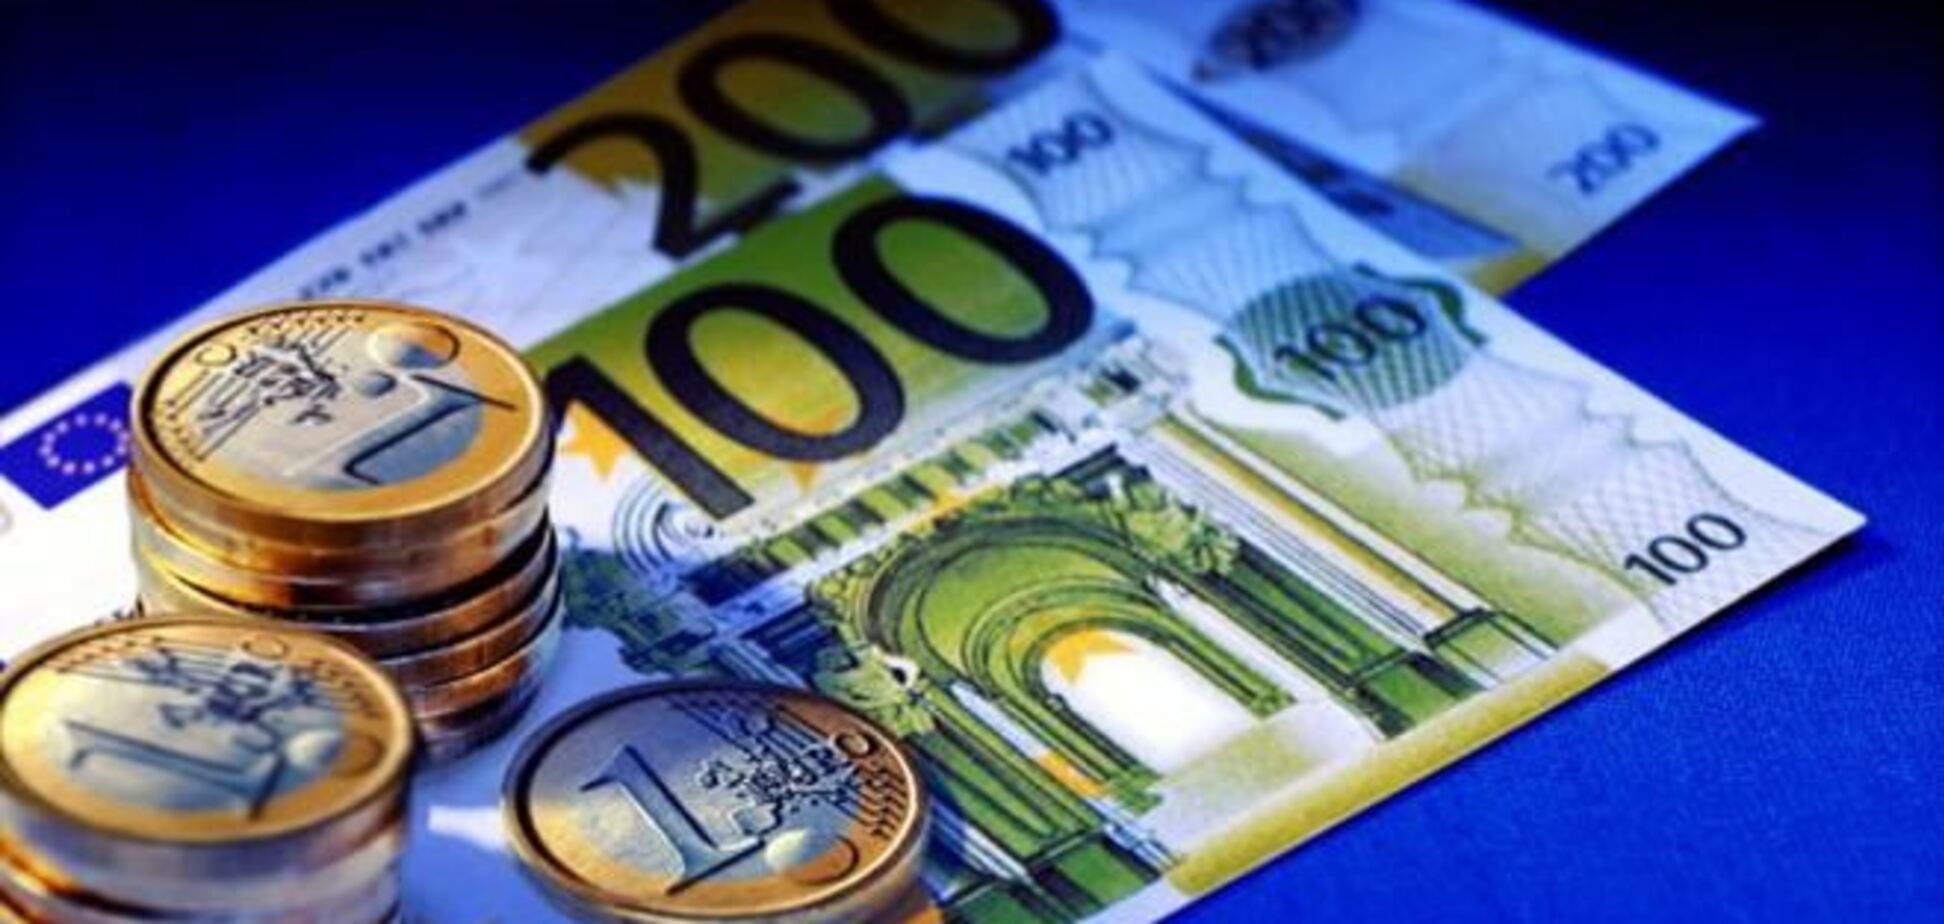 Евро в обменных пунктах продают по 15 гривен